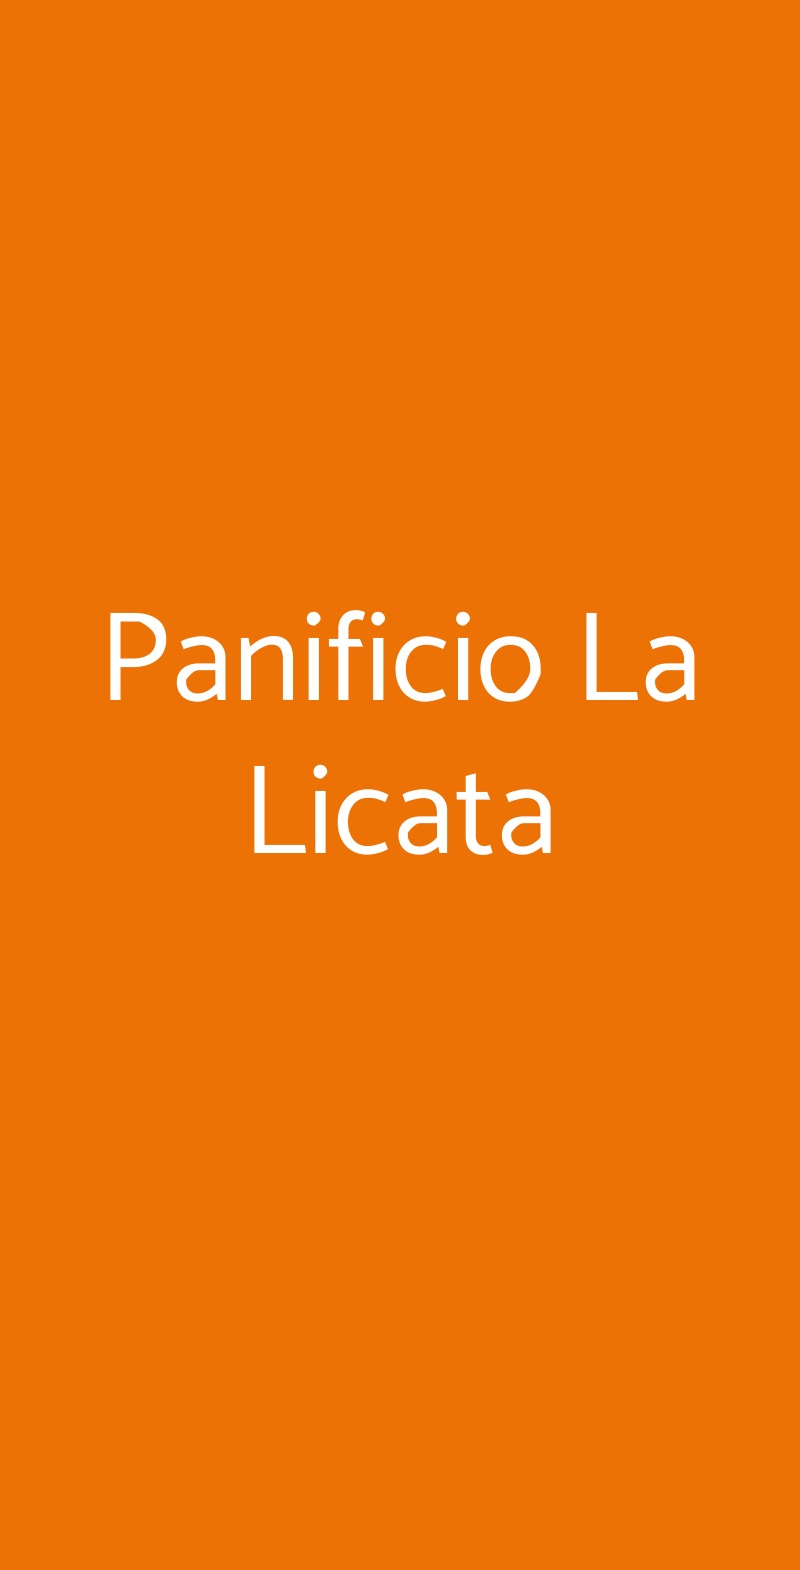 Panificio La Licata Palermo menù 1 pagina